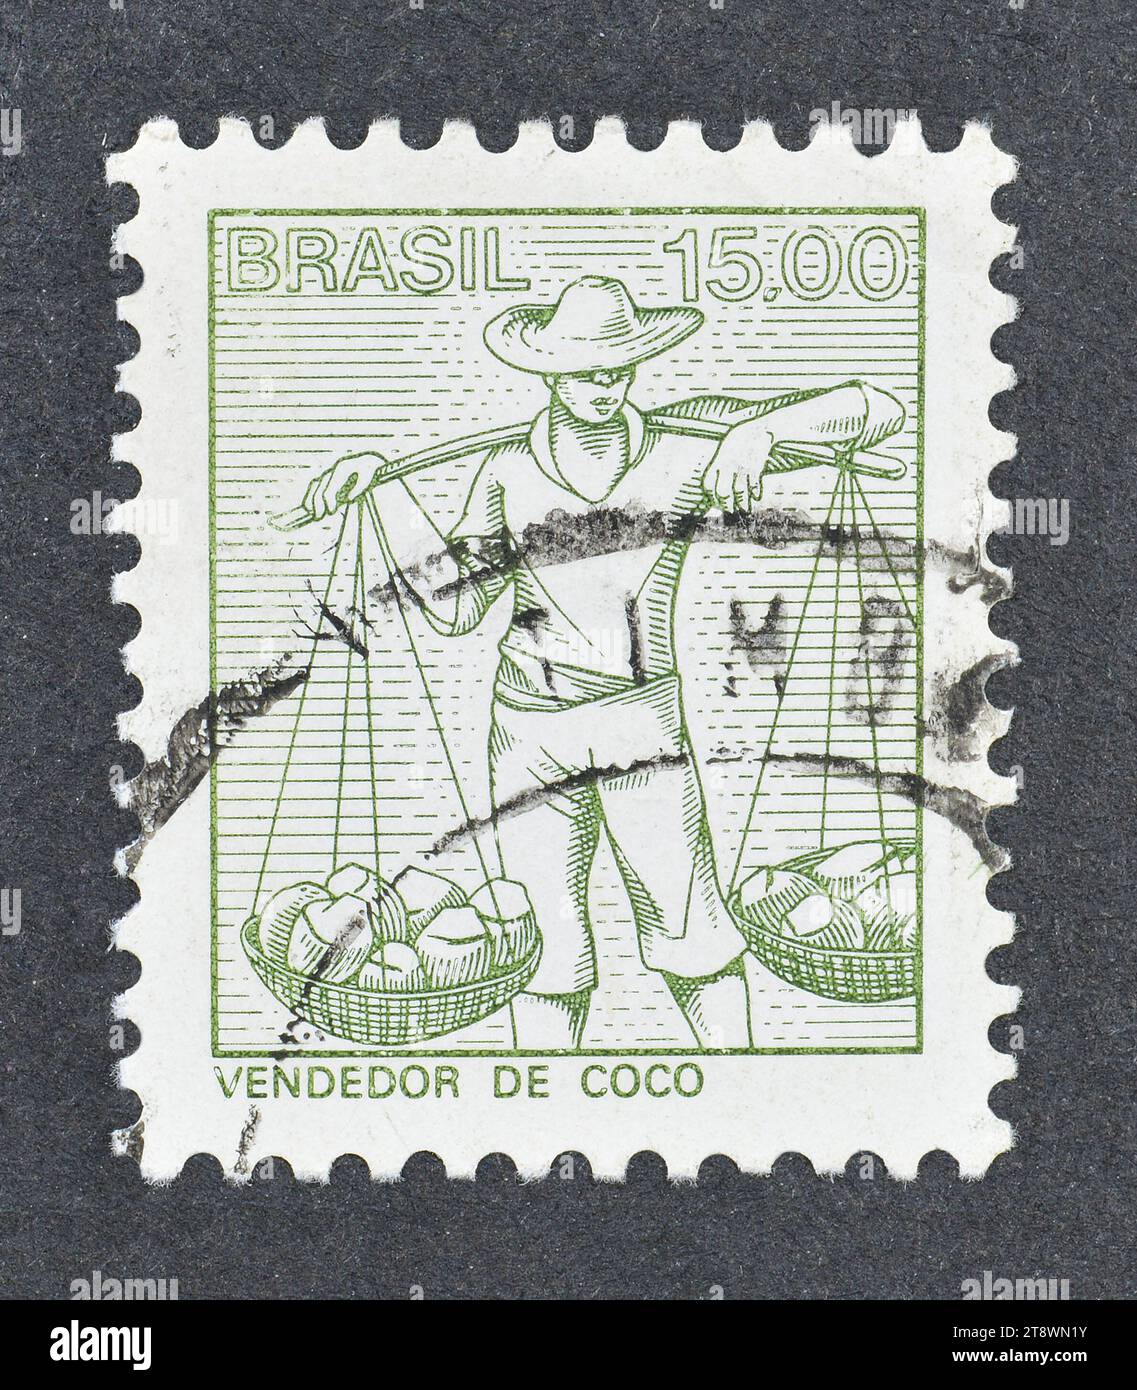 Gestempelte Briefmarke, gedruckt von Brasilien, die Coconut Vendor zeigt, um 1979. Stockfoto